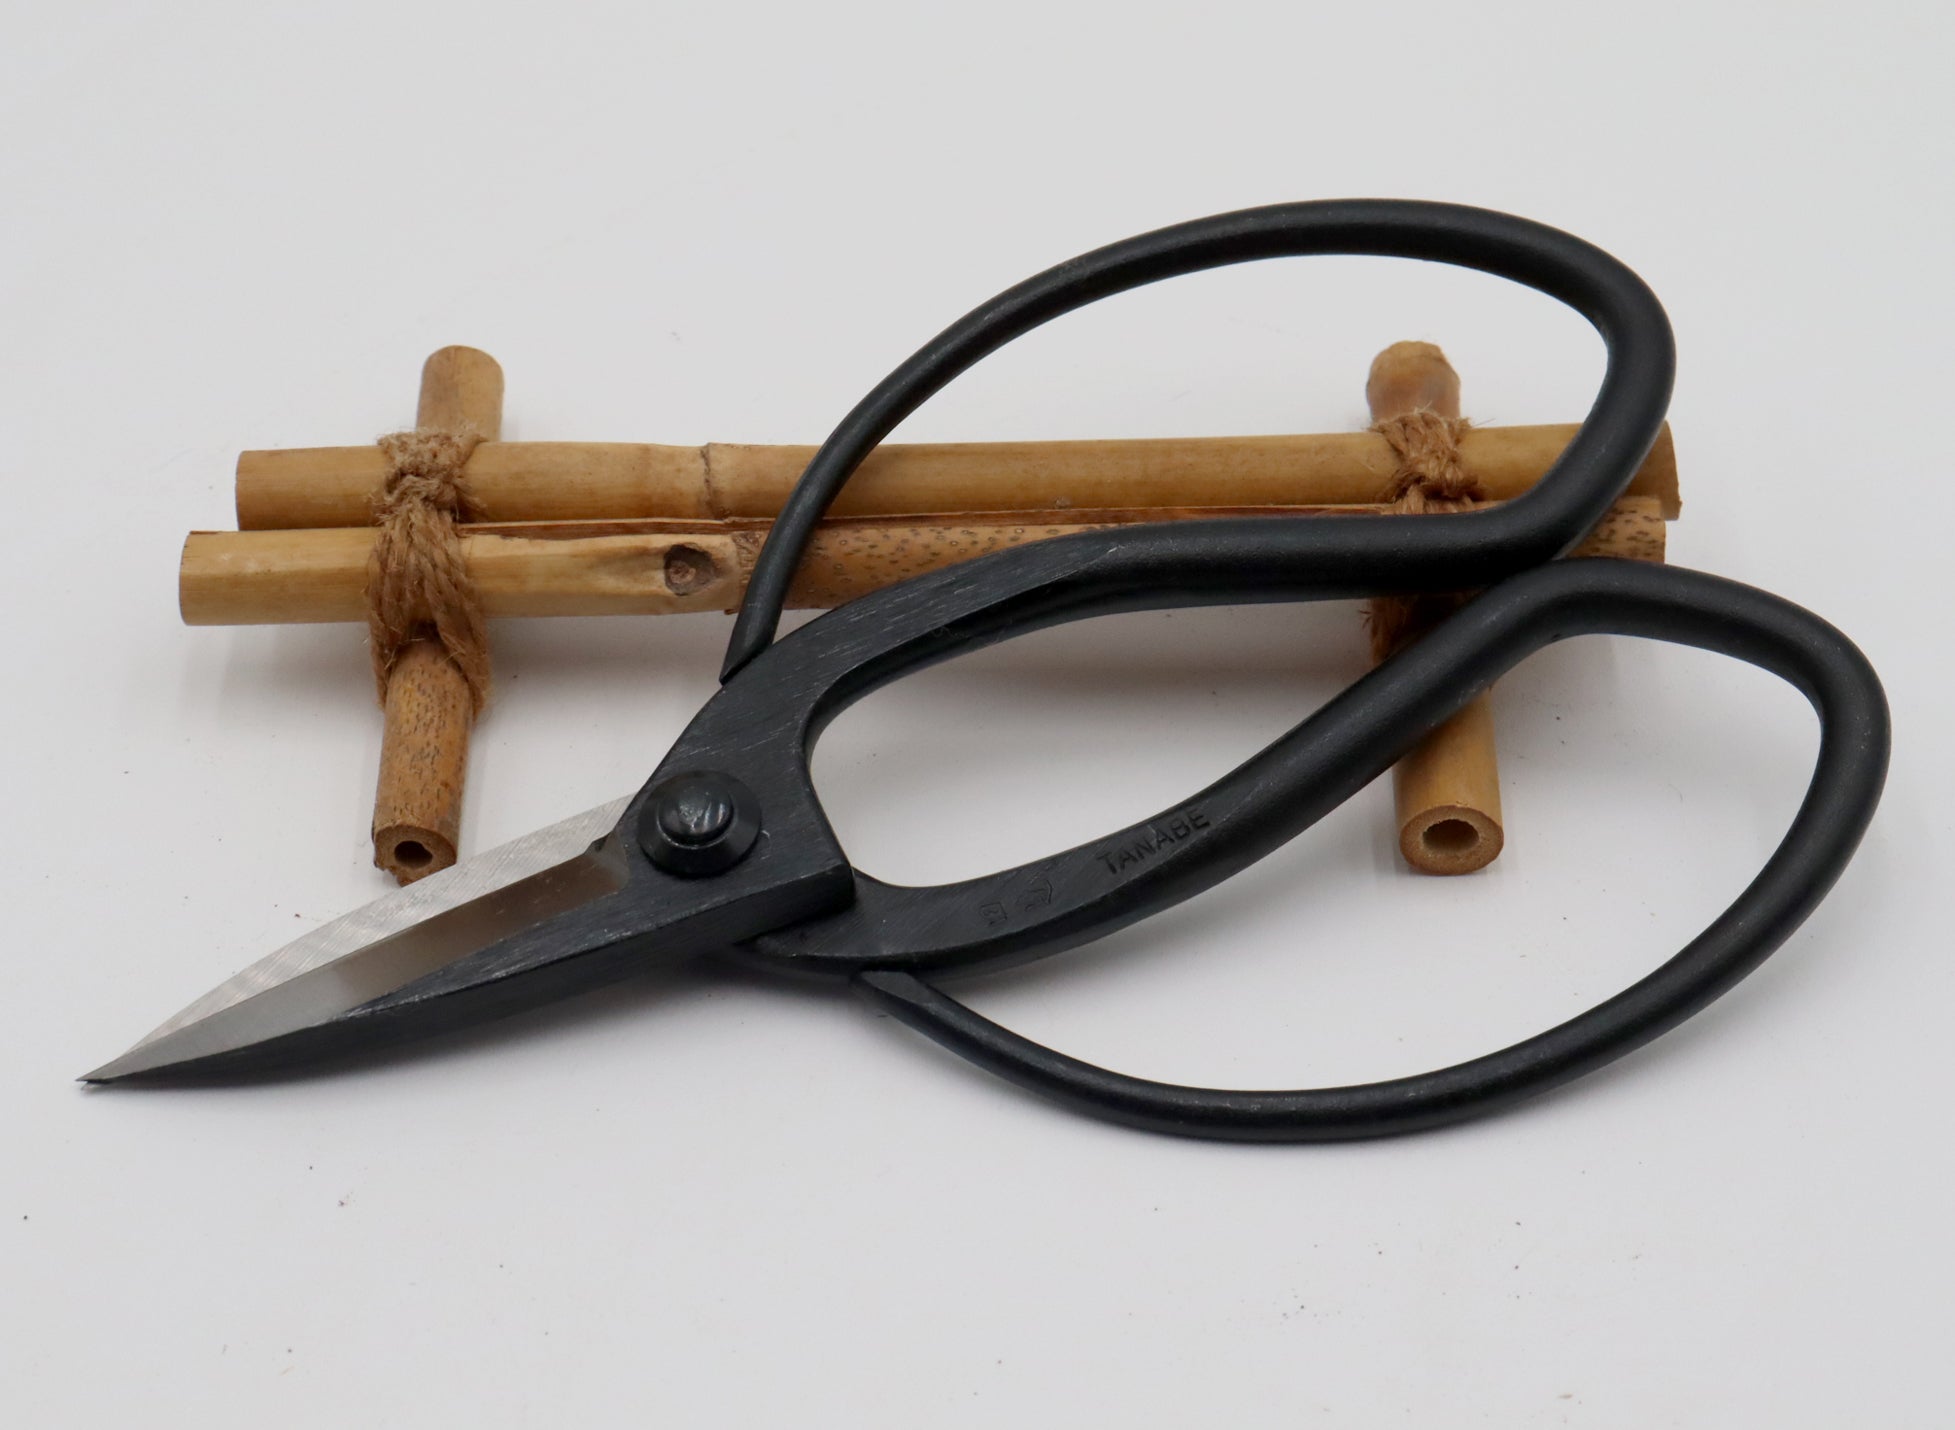 Tanabe Gardening Scissors